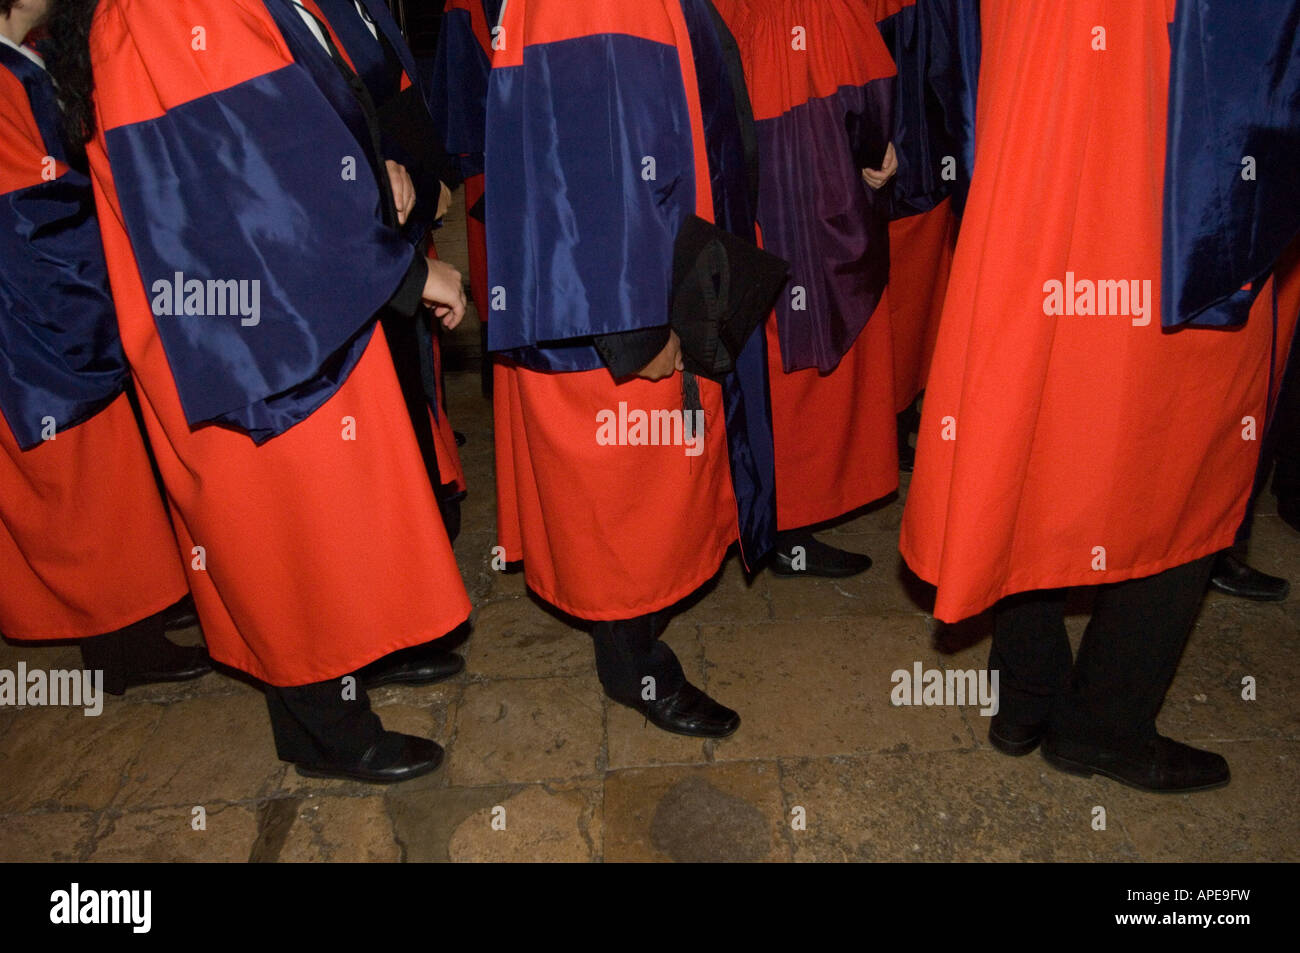 Feierlichen Abschluss in Oxford einen Moment zum Feiern und Reflexion, wenn Schüler ihren Abschluss erhalten Stockfoto